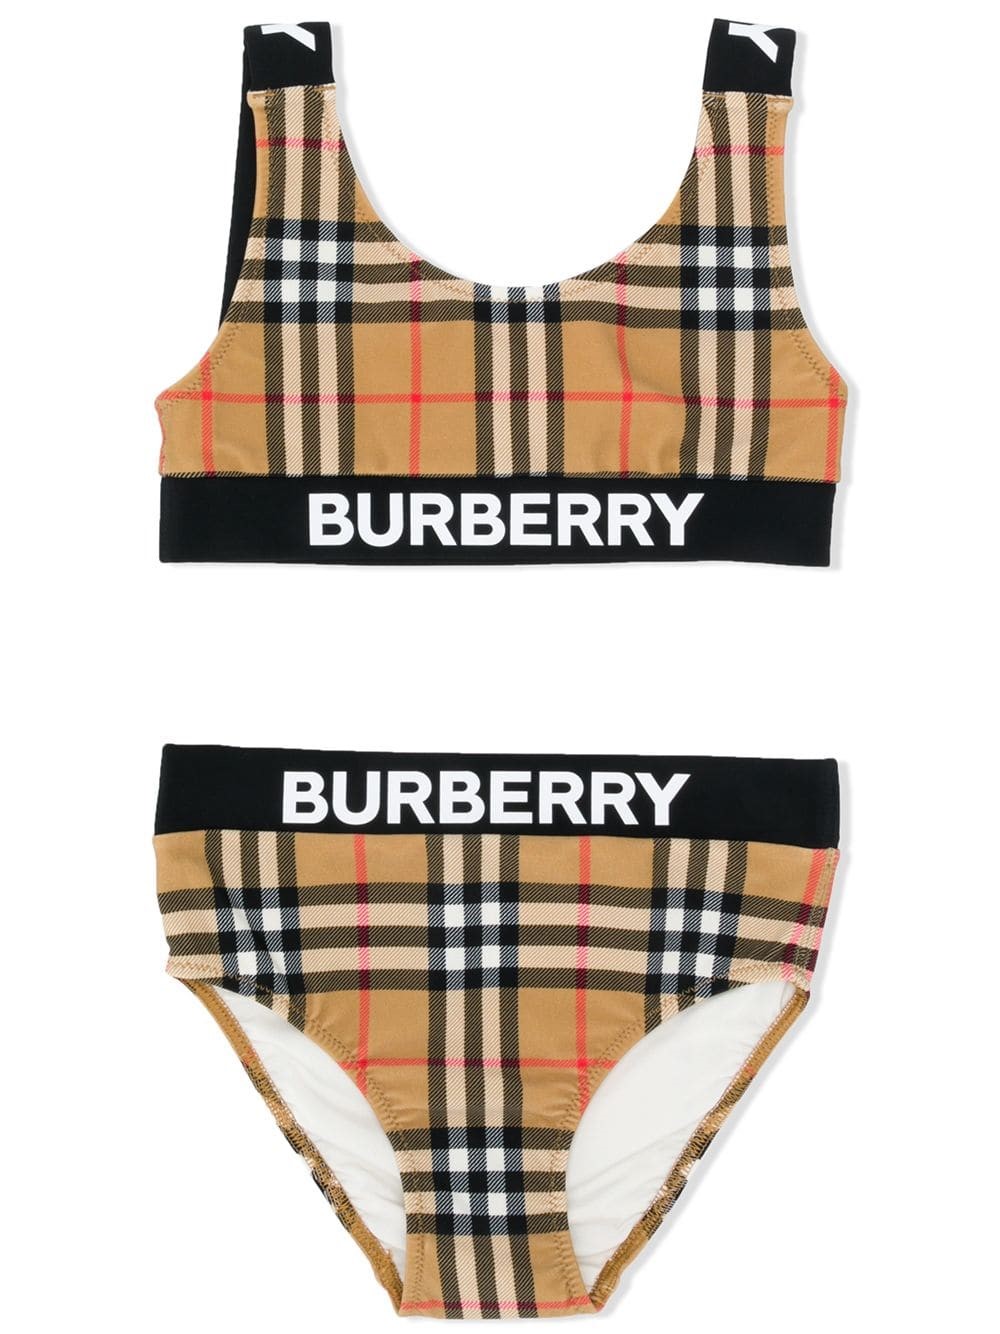 burberry swimsuit kids sale